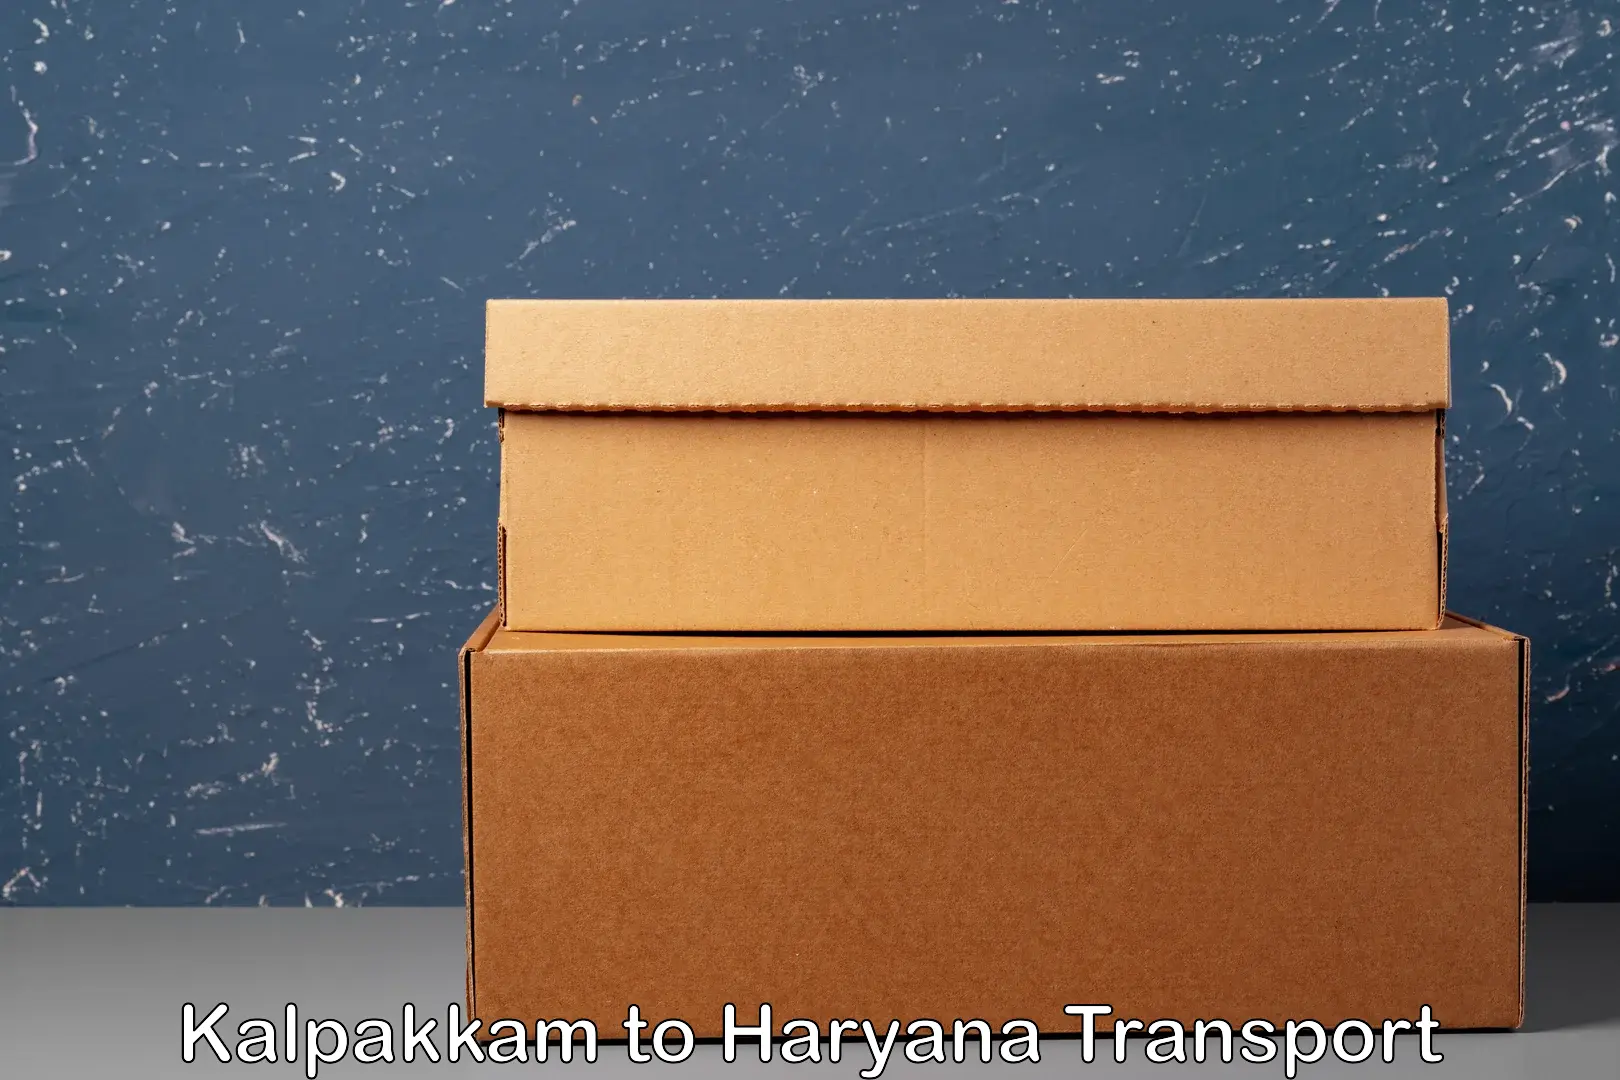 Delivery service Kalpakkam to Haryana